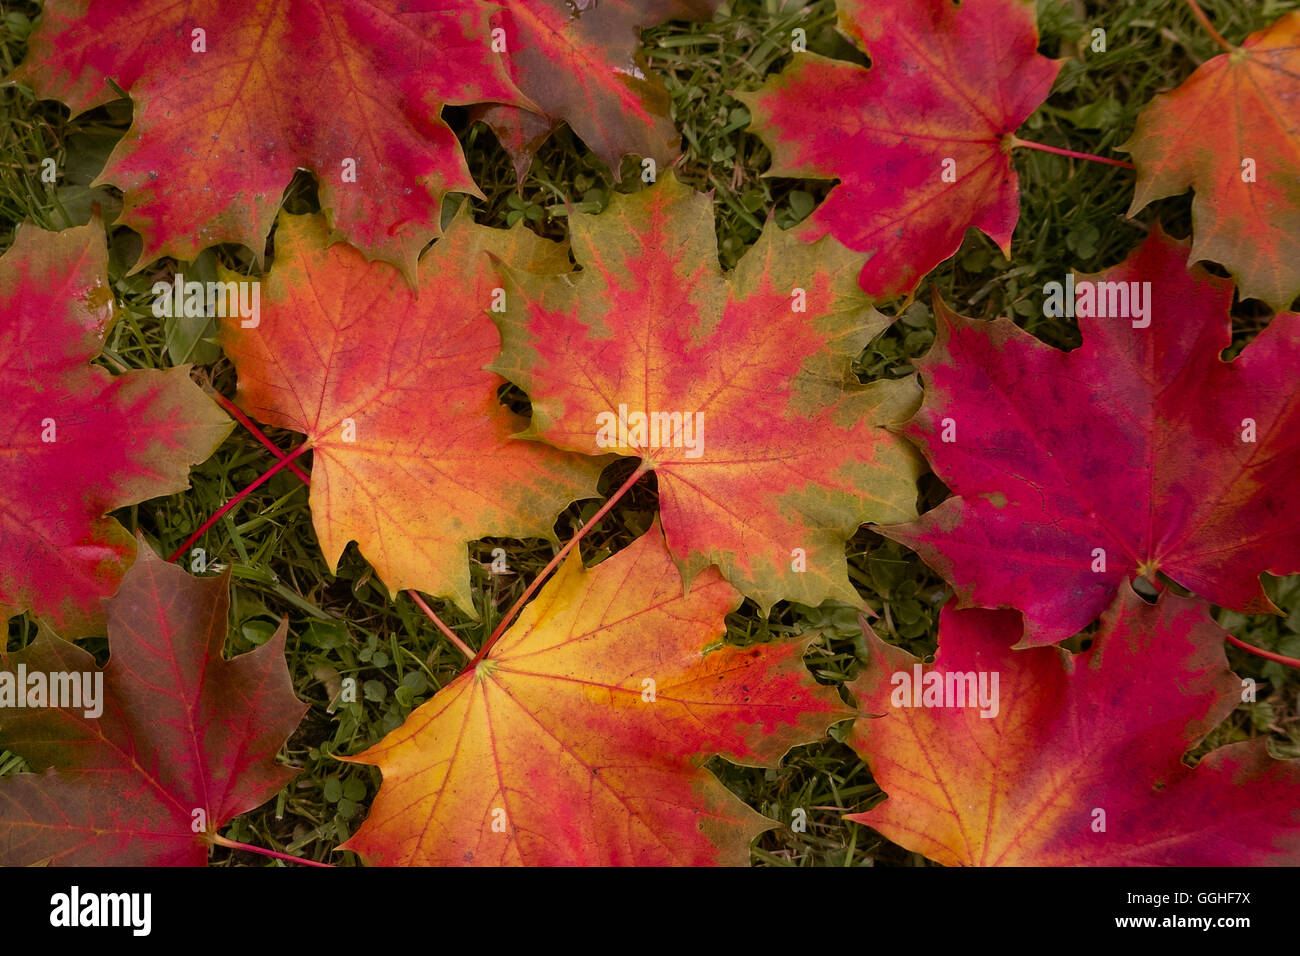 Les feuilles d'automne, feuilles colorées, érable de Norvège, buntes herbstlaub des spitz-ahorn (Acer platanoides) Banque D'Images